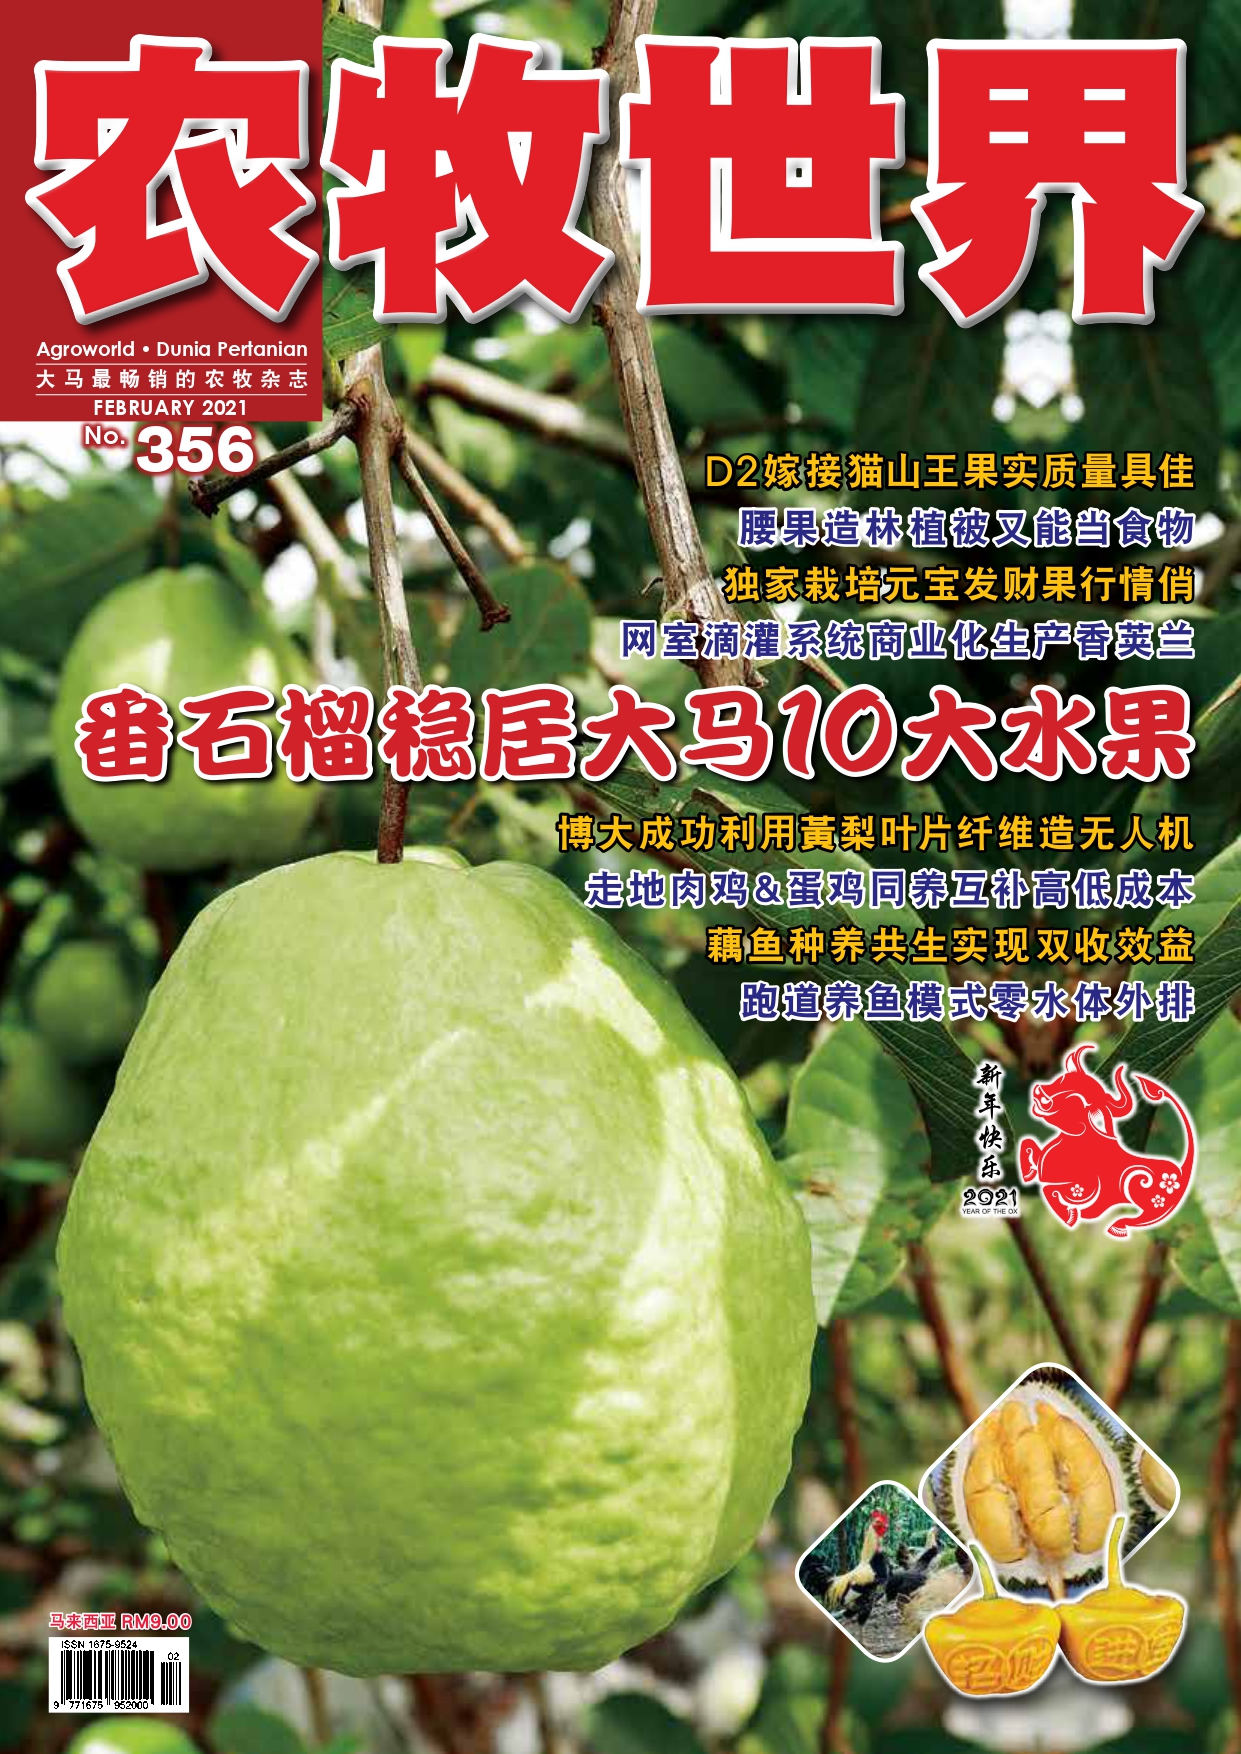 杂志：番石榴种植位居马来西亚十大水果之列 - 农牧世界